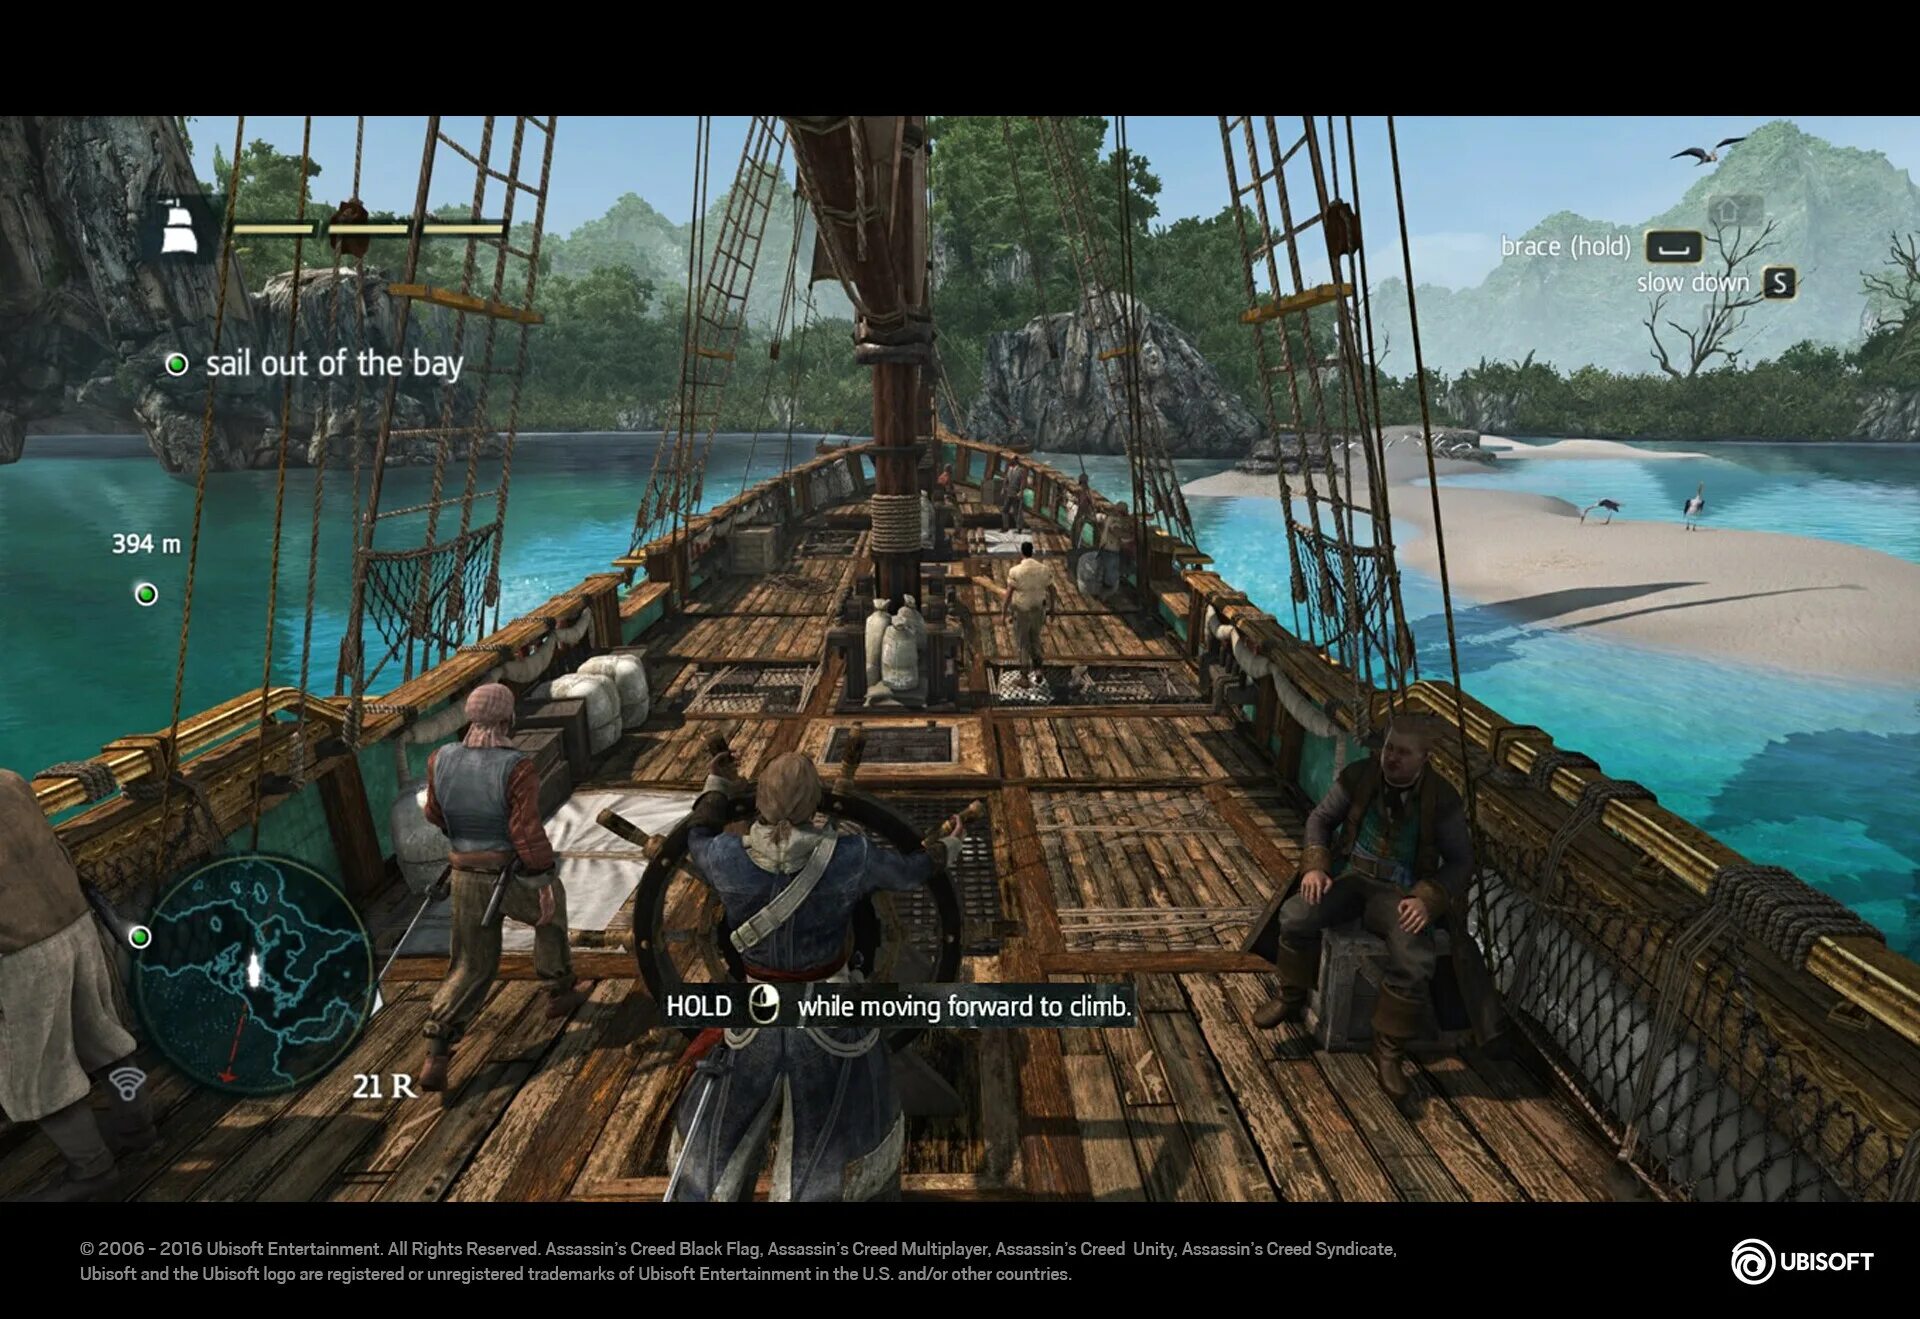 Assassin's Creed 4 Black Flag геймплей. Assassin’s Creed IV: Black Flag – 2013. Ассасин Крид 4 Блэк флаг геймплей. Ассасин Крид черный флаг геймплей.